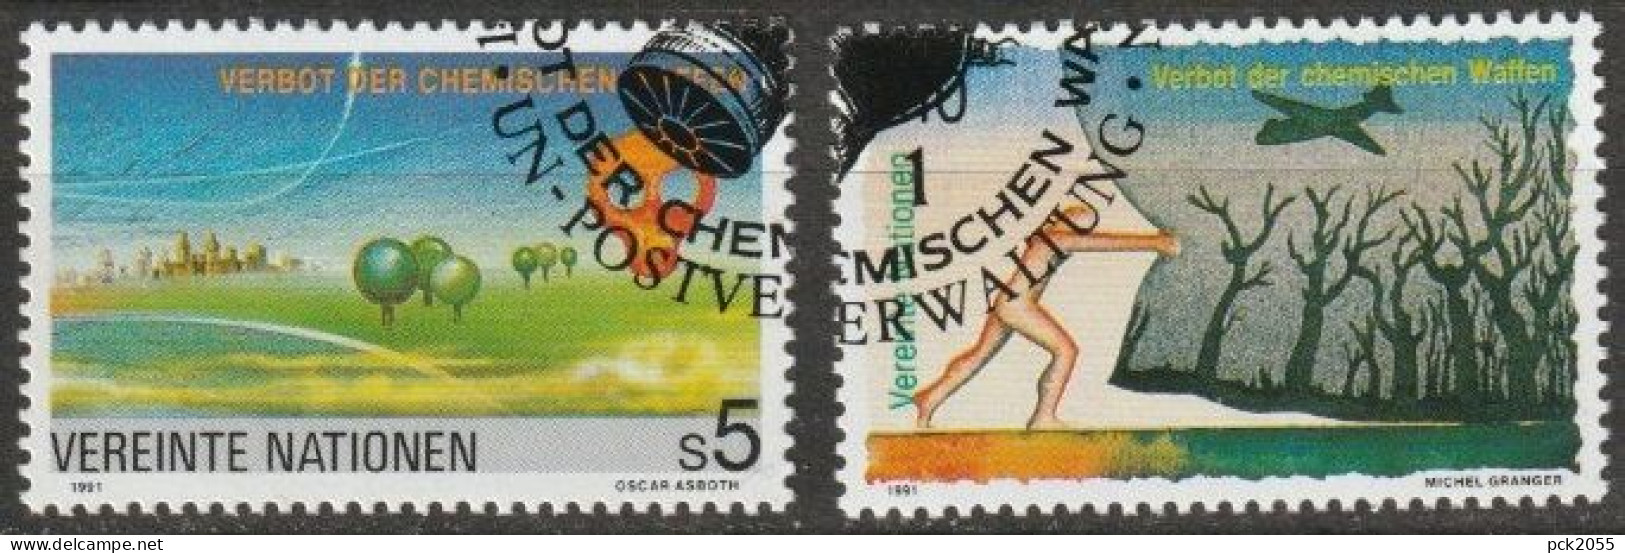 UNO Wien 1991 MiNr.119-120 O Gestempelt Verbot Von Chemischen Waffen ( 1592) - Used Stamps